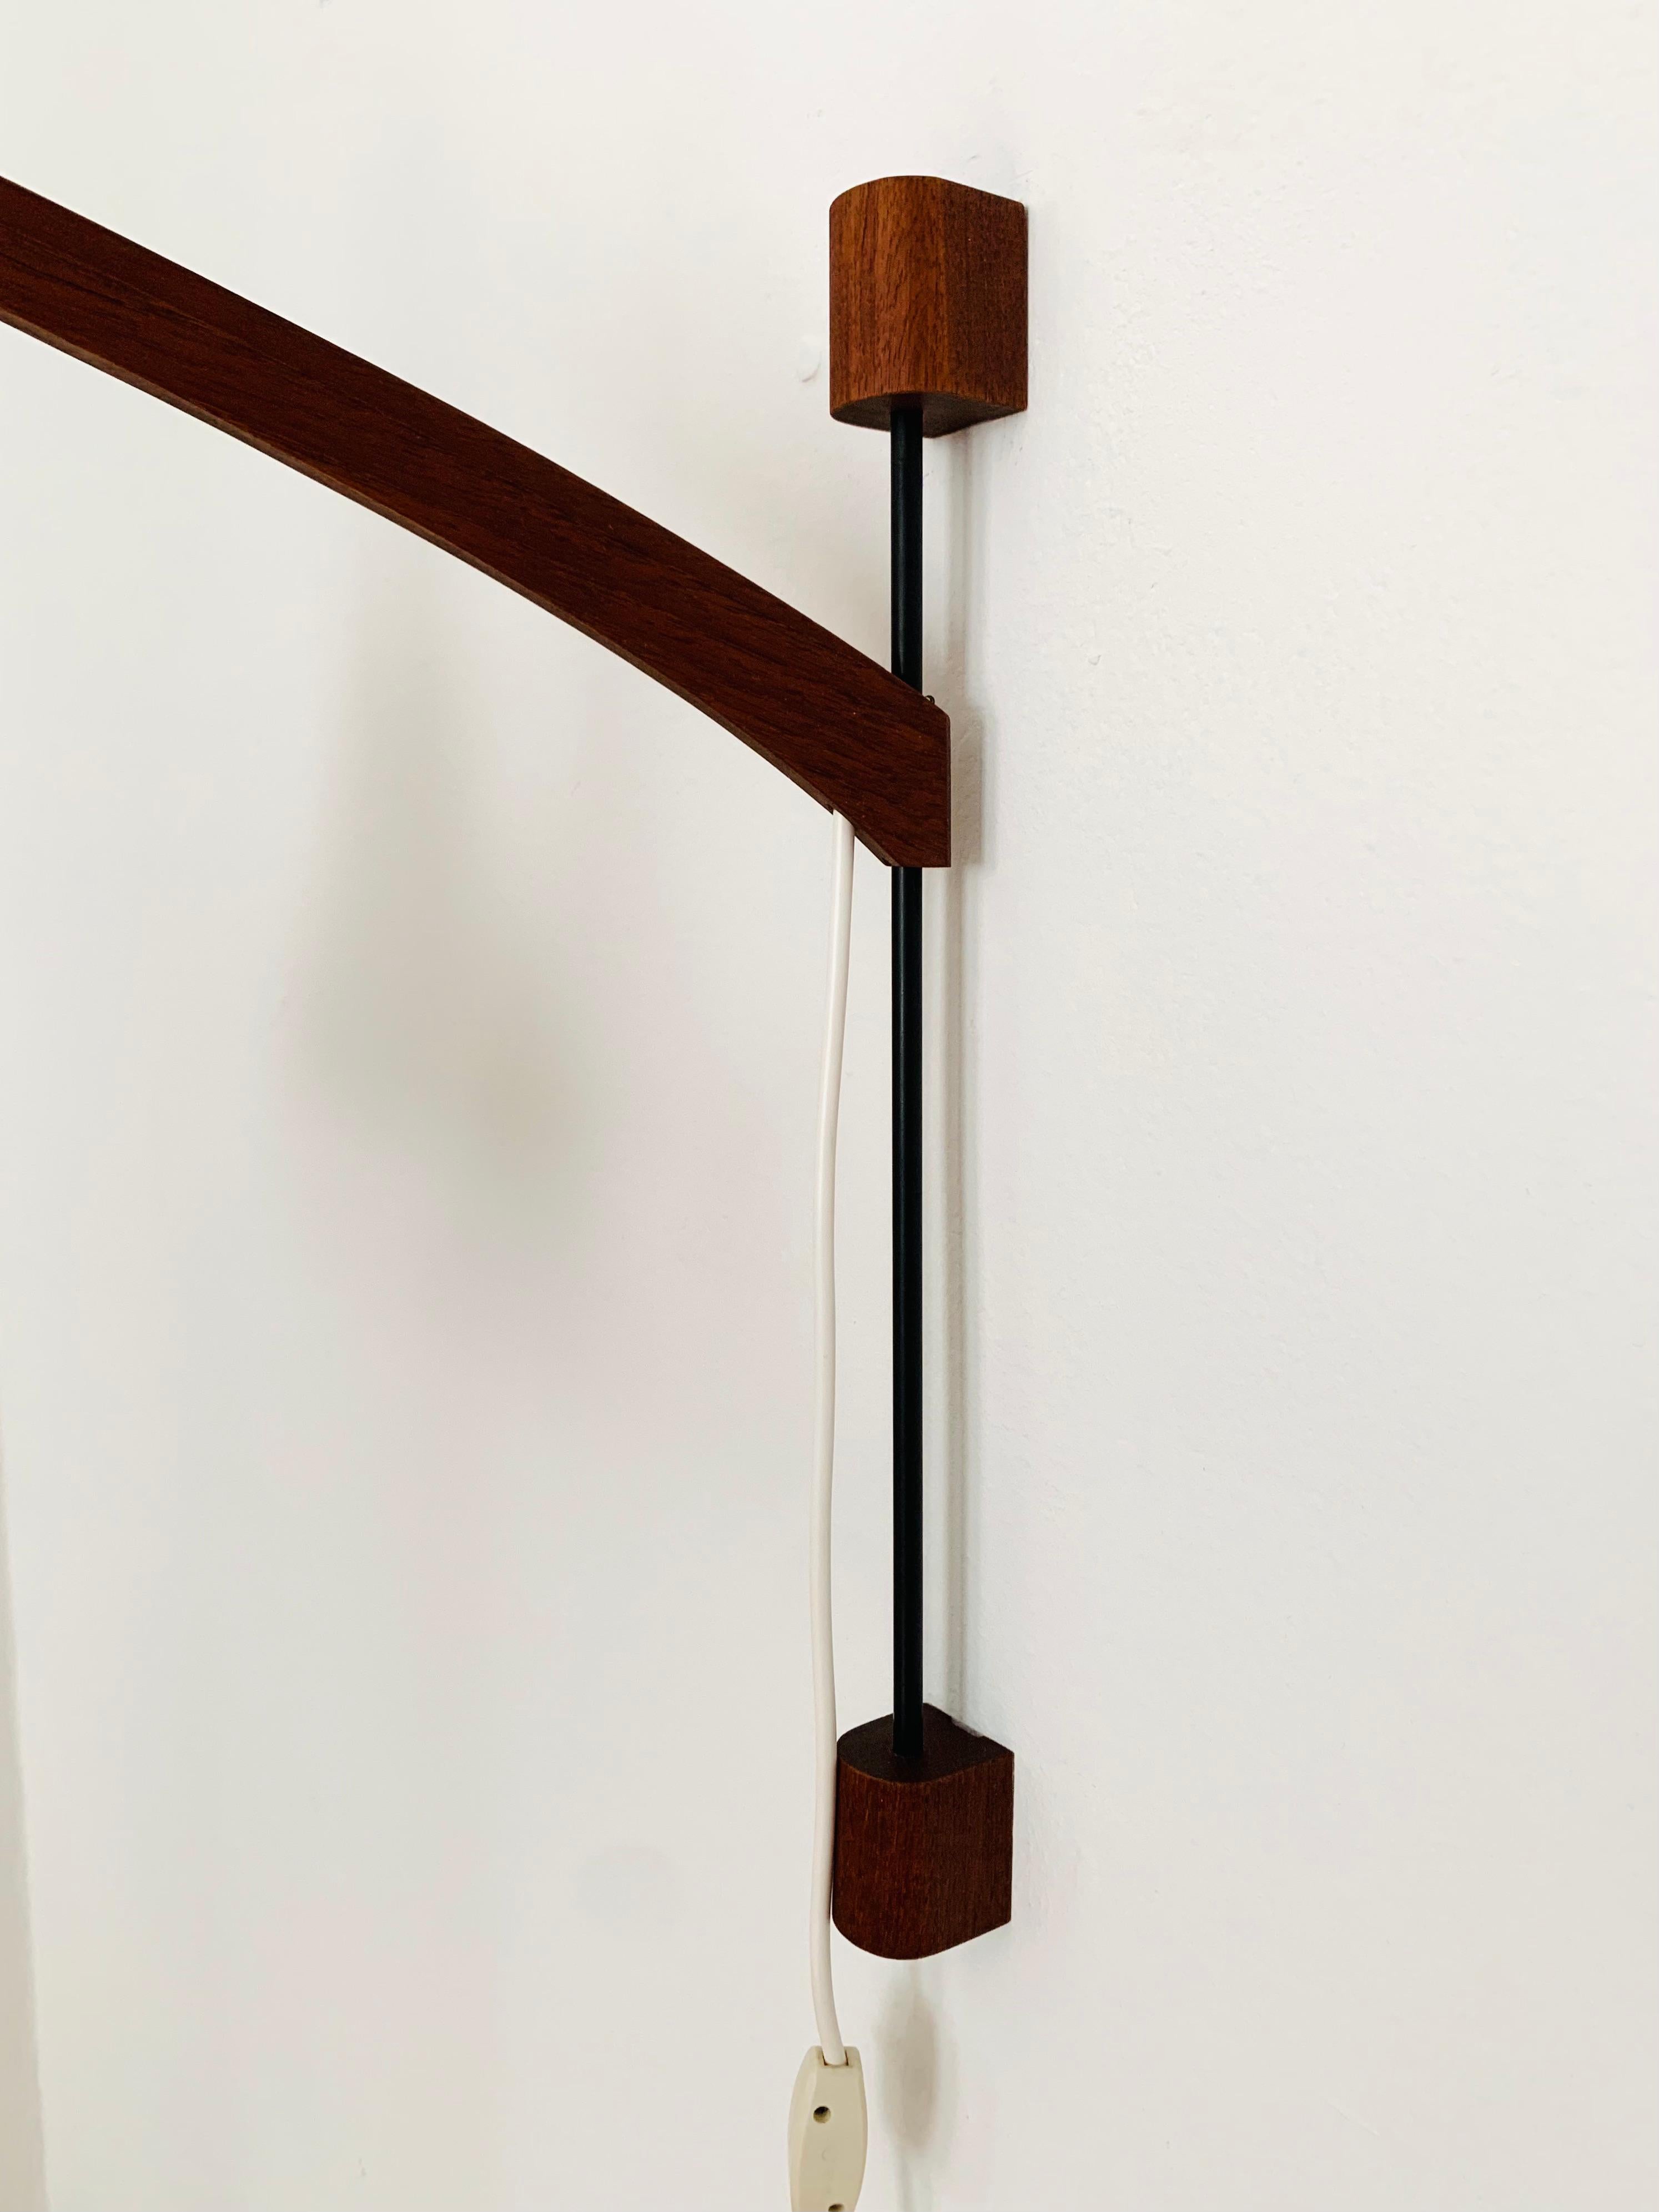 Metal Adjustable Teak and Wicker Wall Lamp